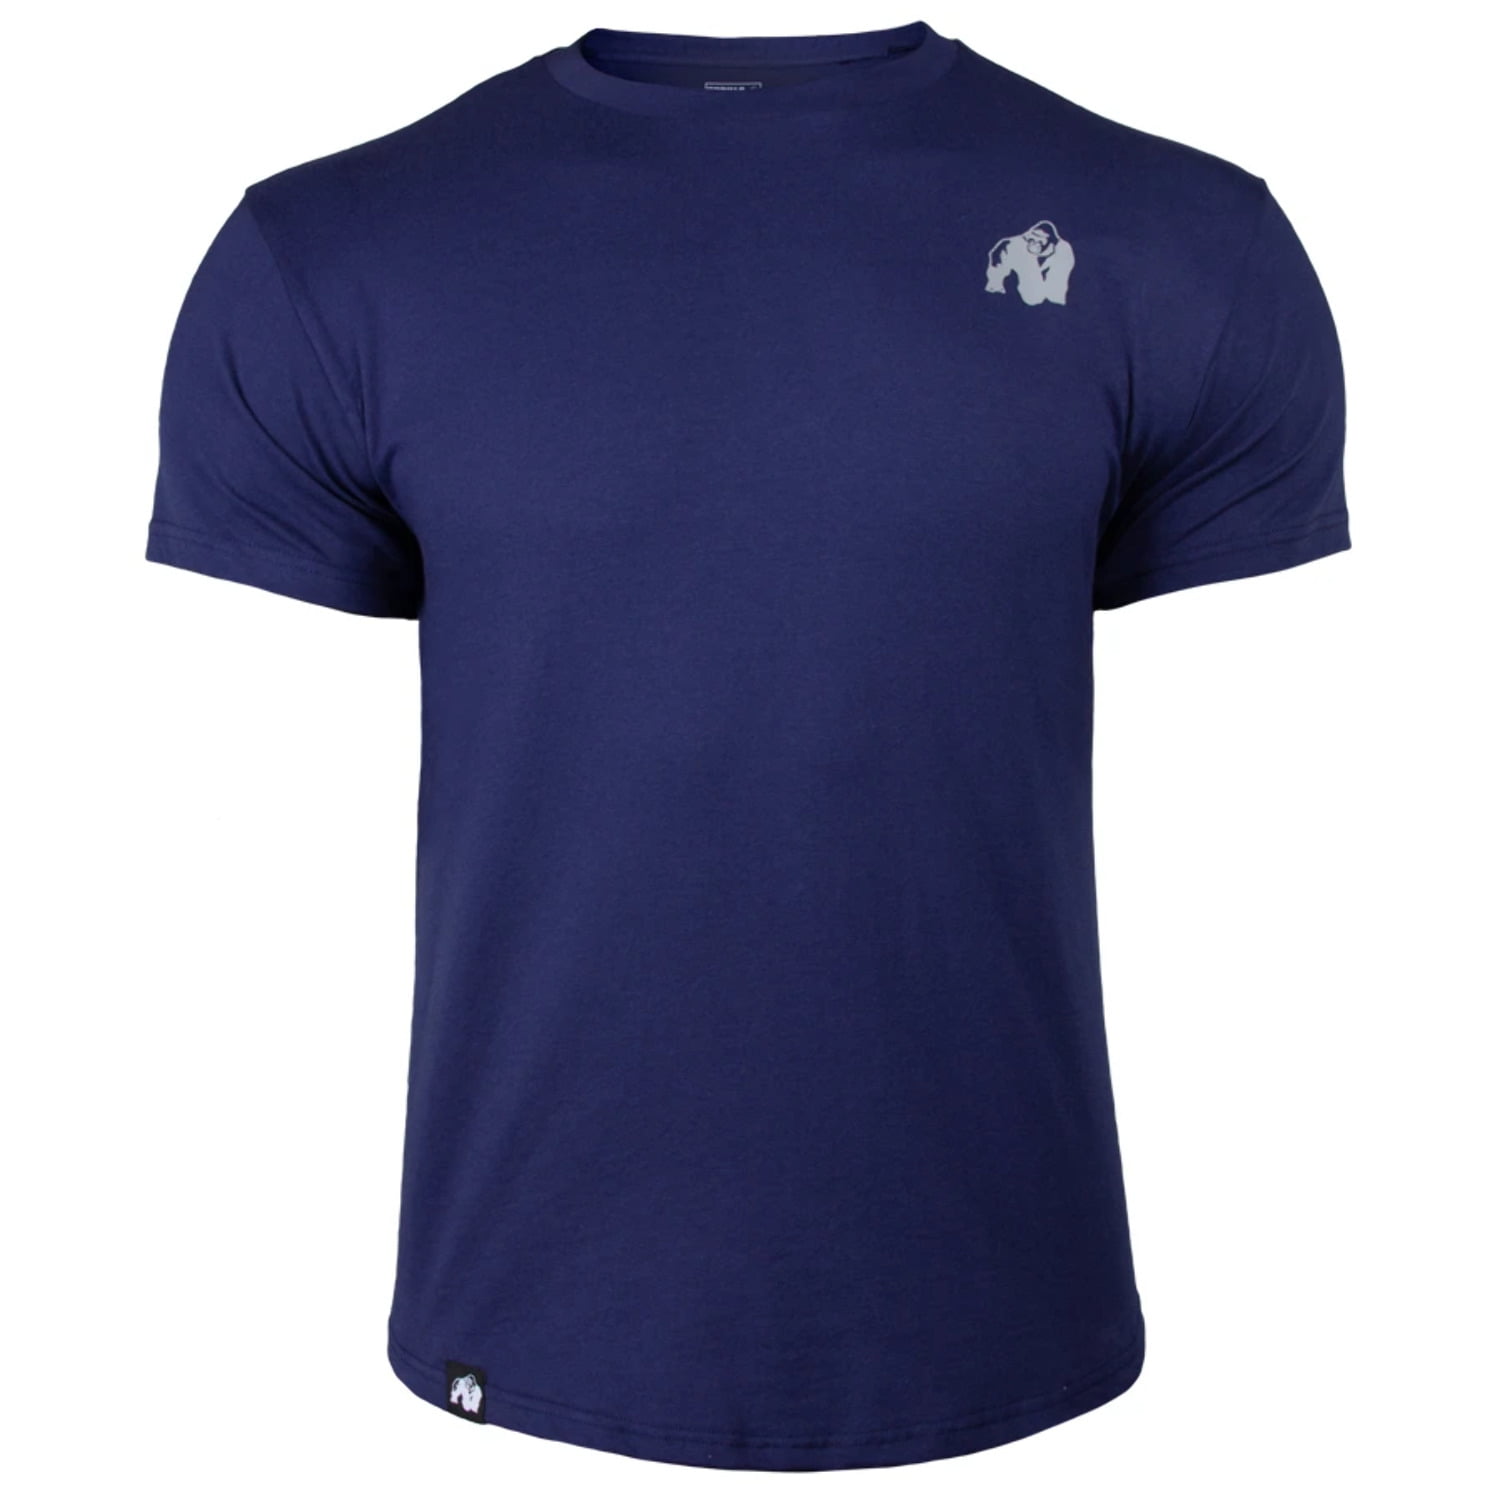 Gorilla Wear Detroit T-Shirt Navy Sale 